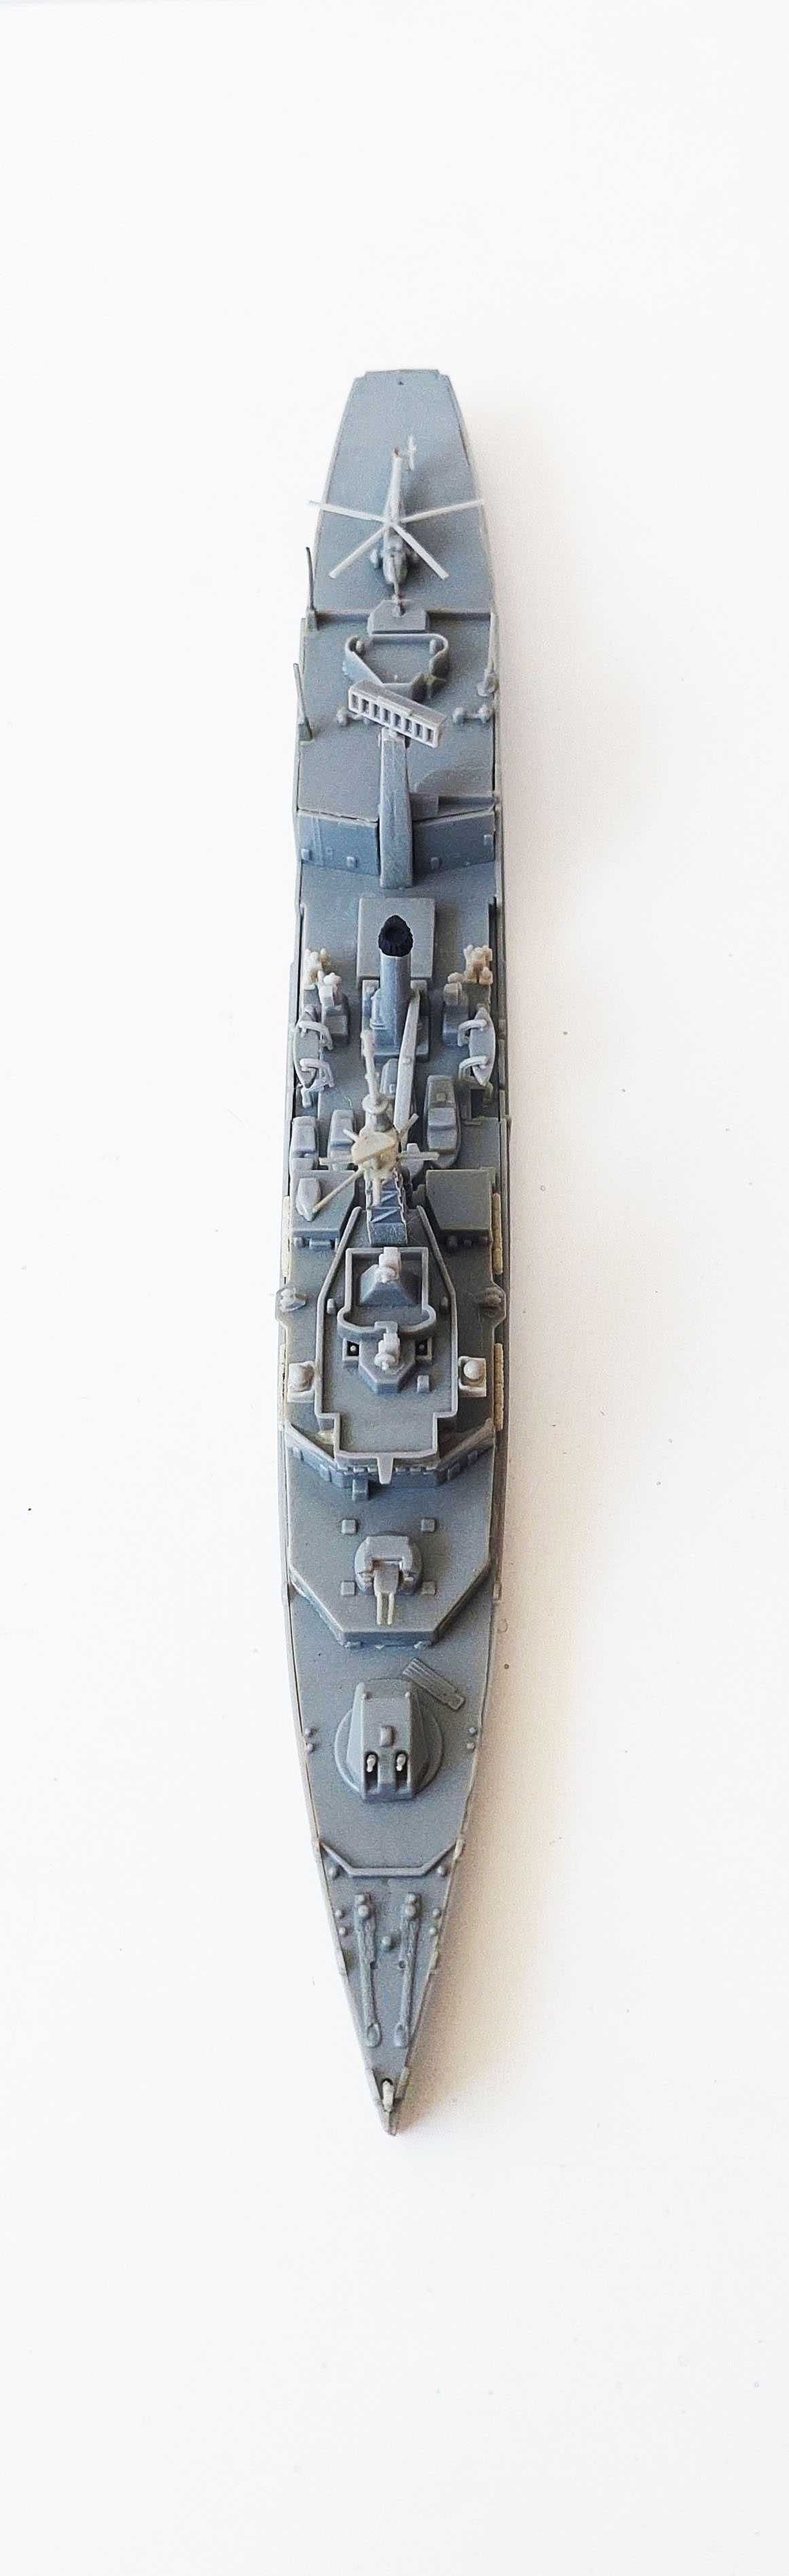 Kit montado de modelismo 1/700 em plástico do Cruzador "HMS Tiger"